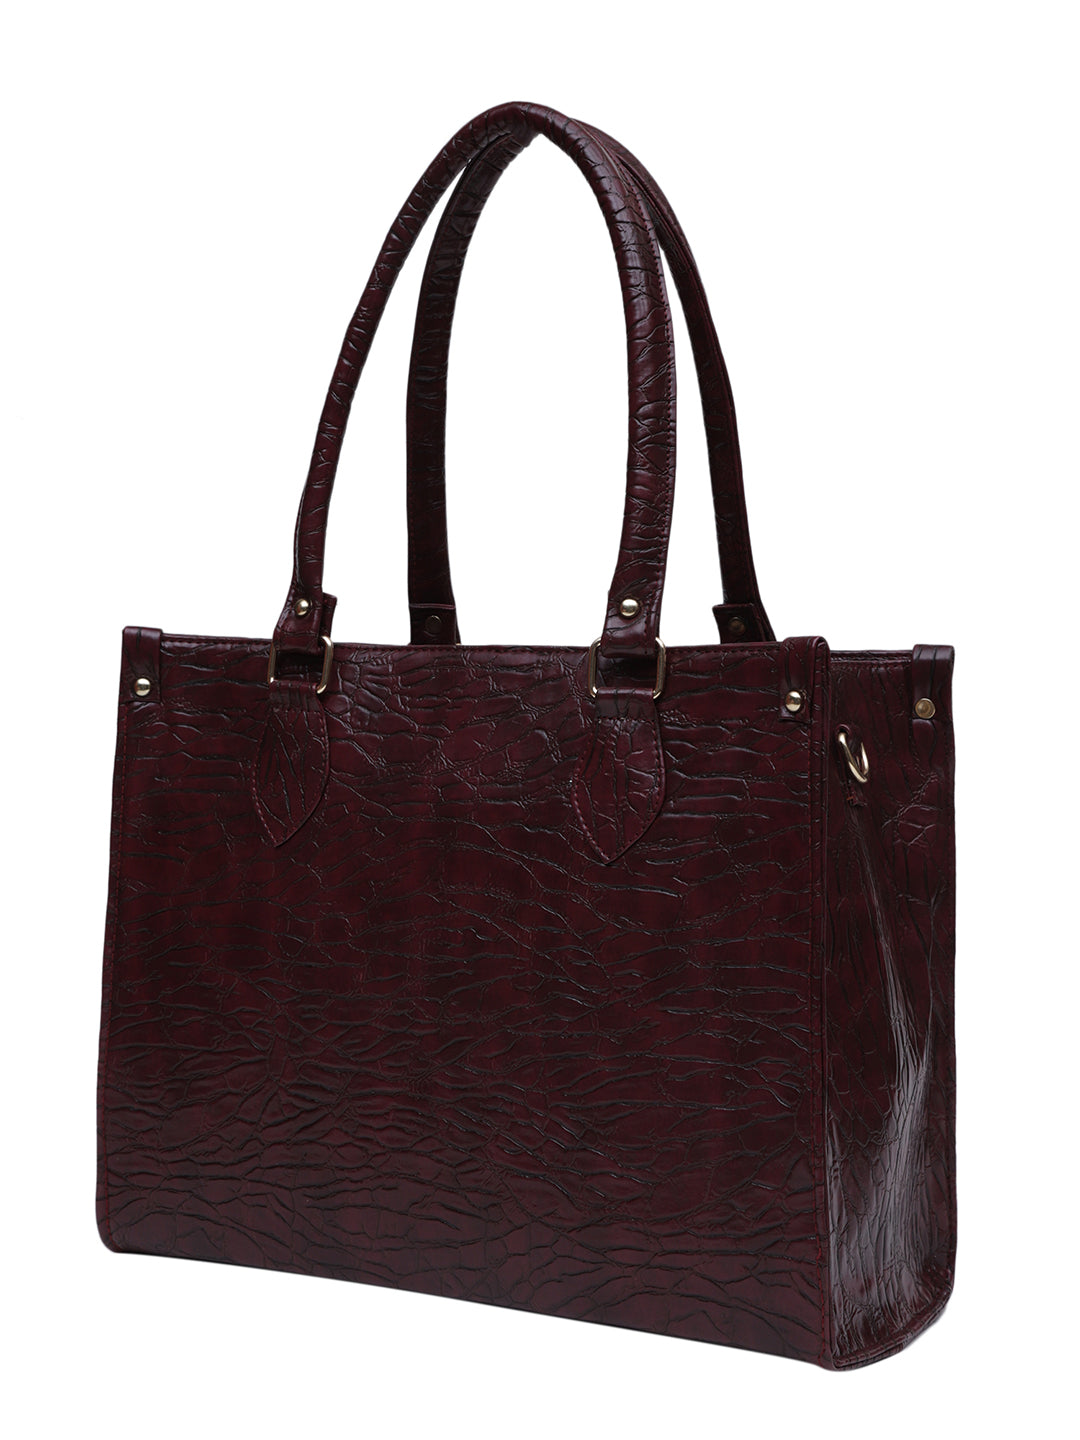 MINI WESST KAREN BAGS Maroon Casual Textured Tote Bag(MWTB083MR)